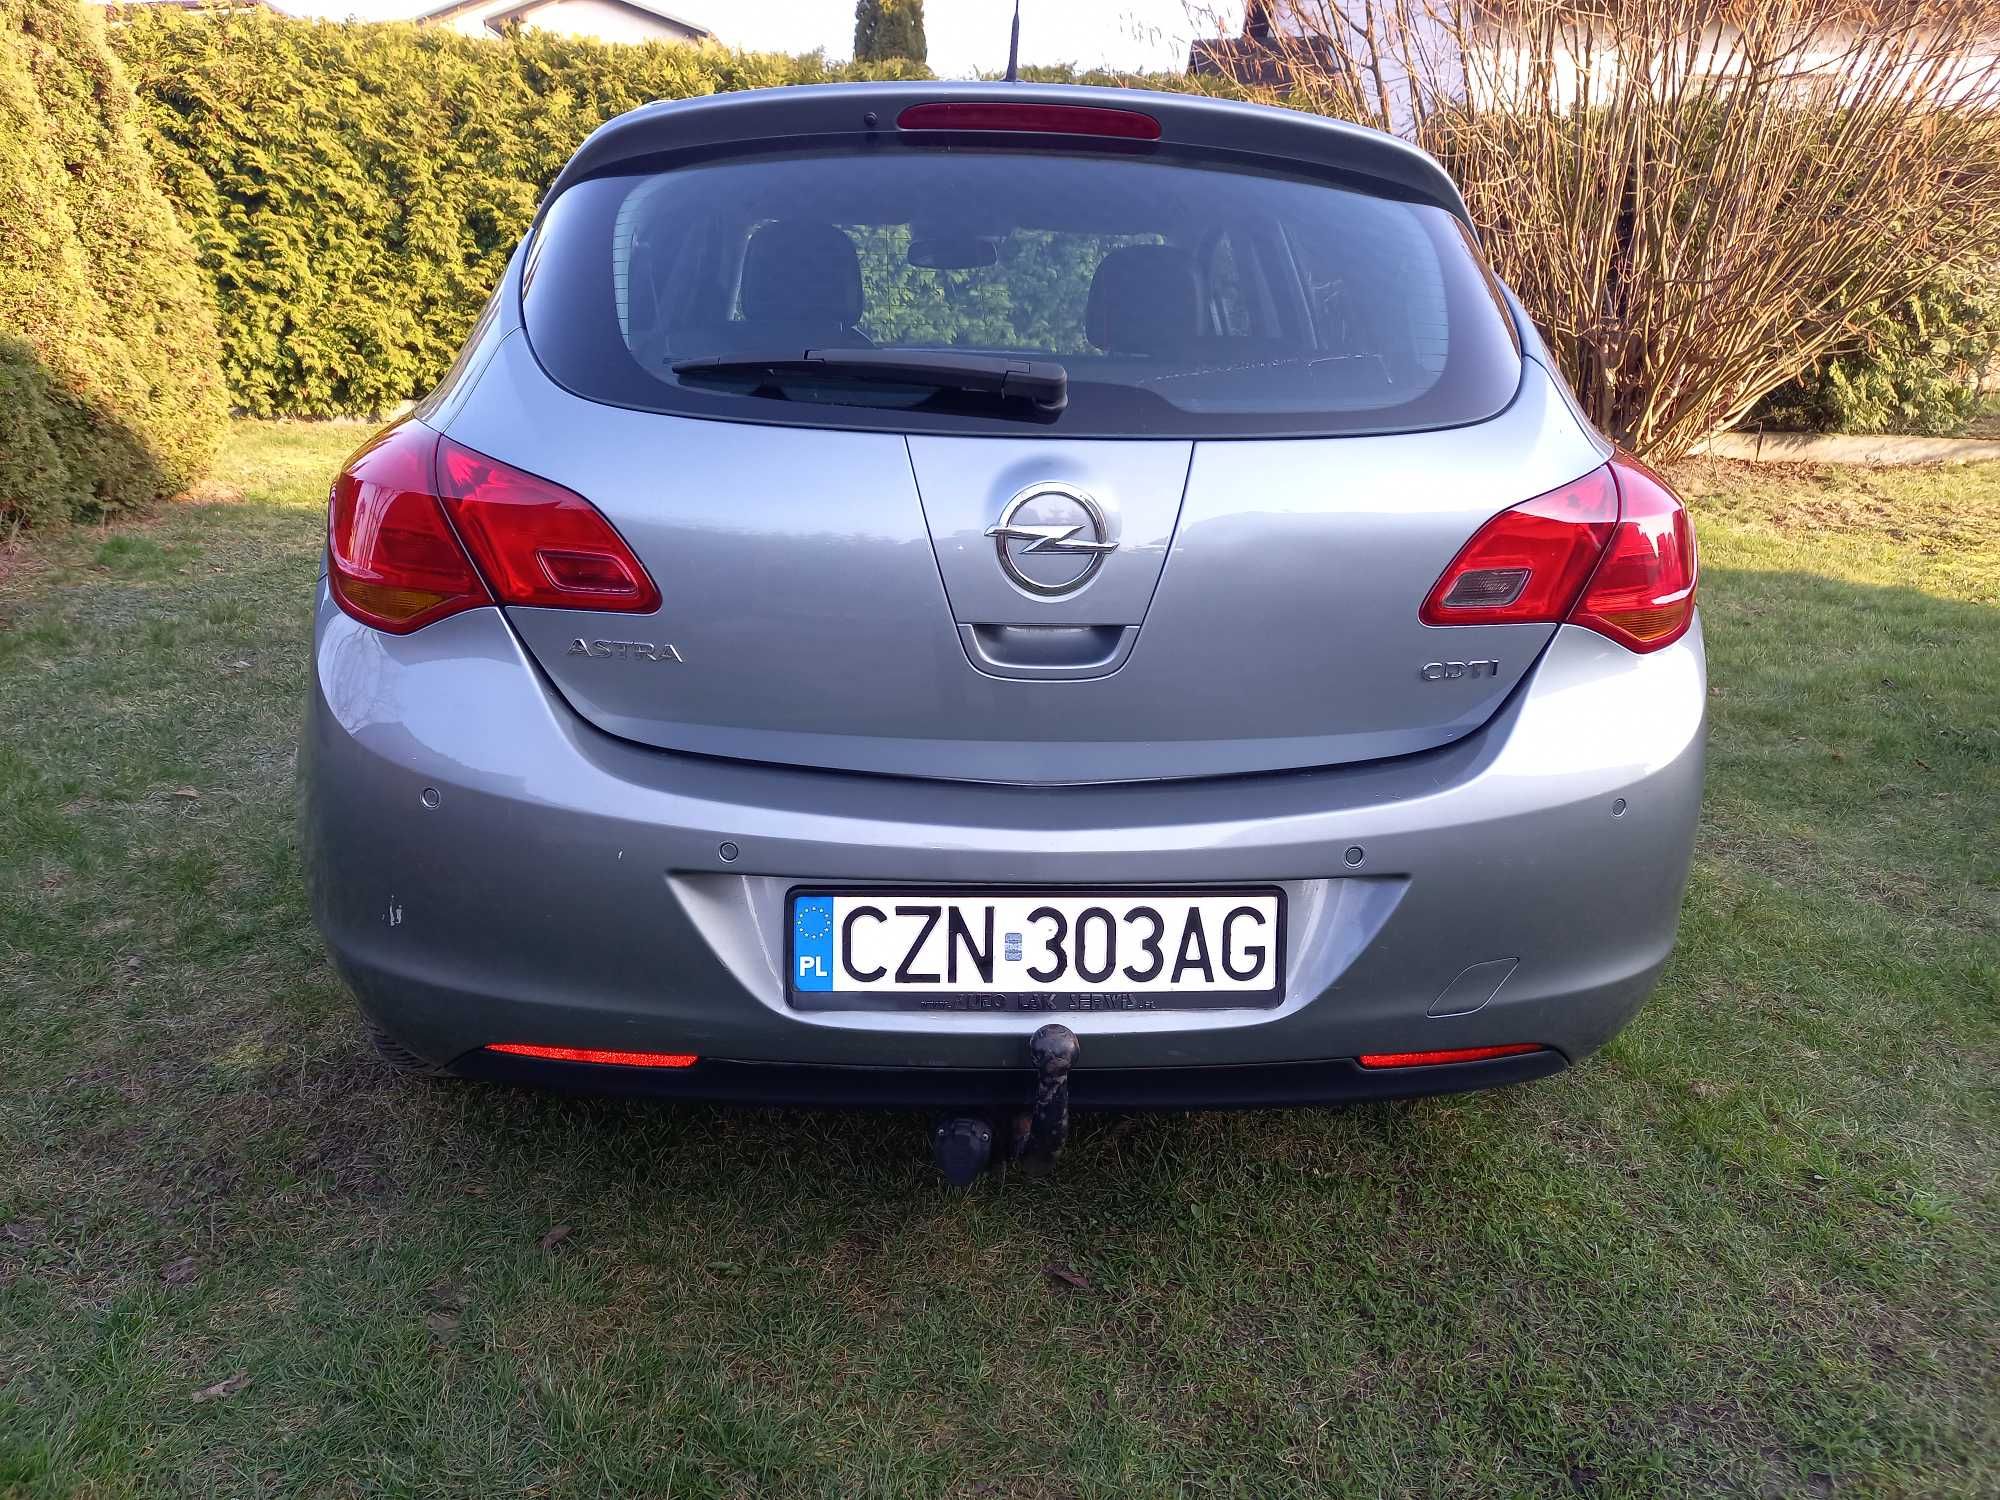 Opel Astra IV 1.7 CDTI Enjoy  2010 r  110 KM